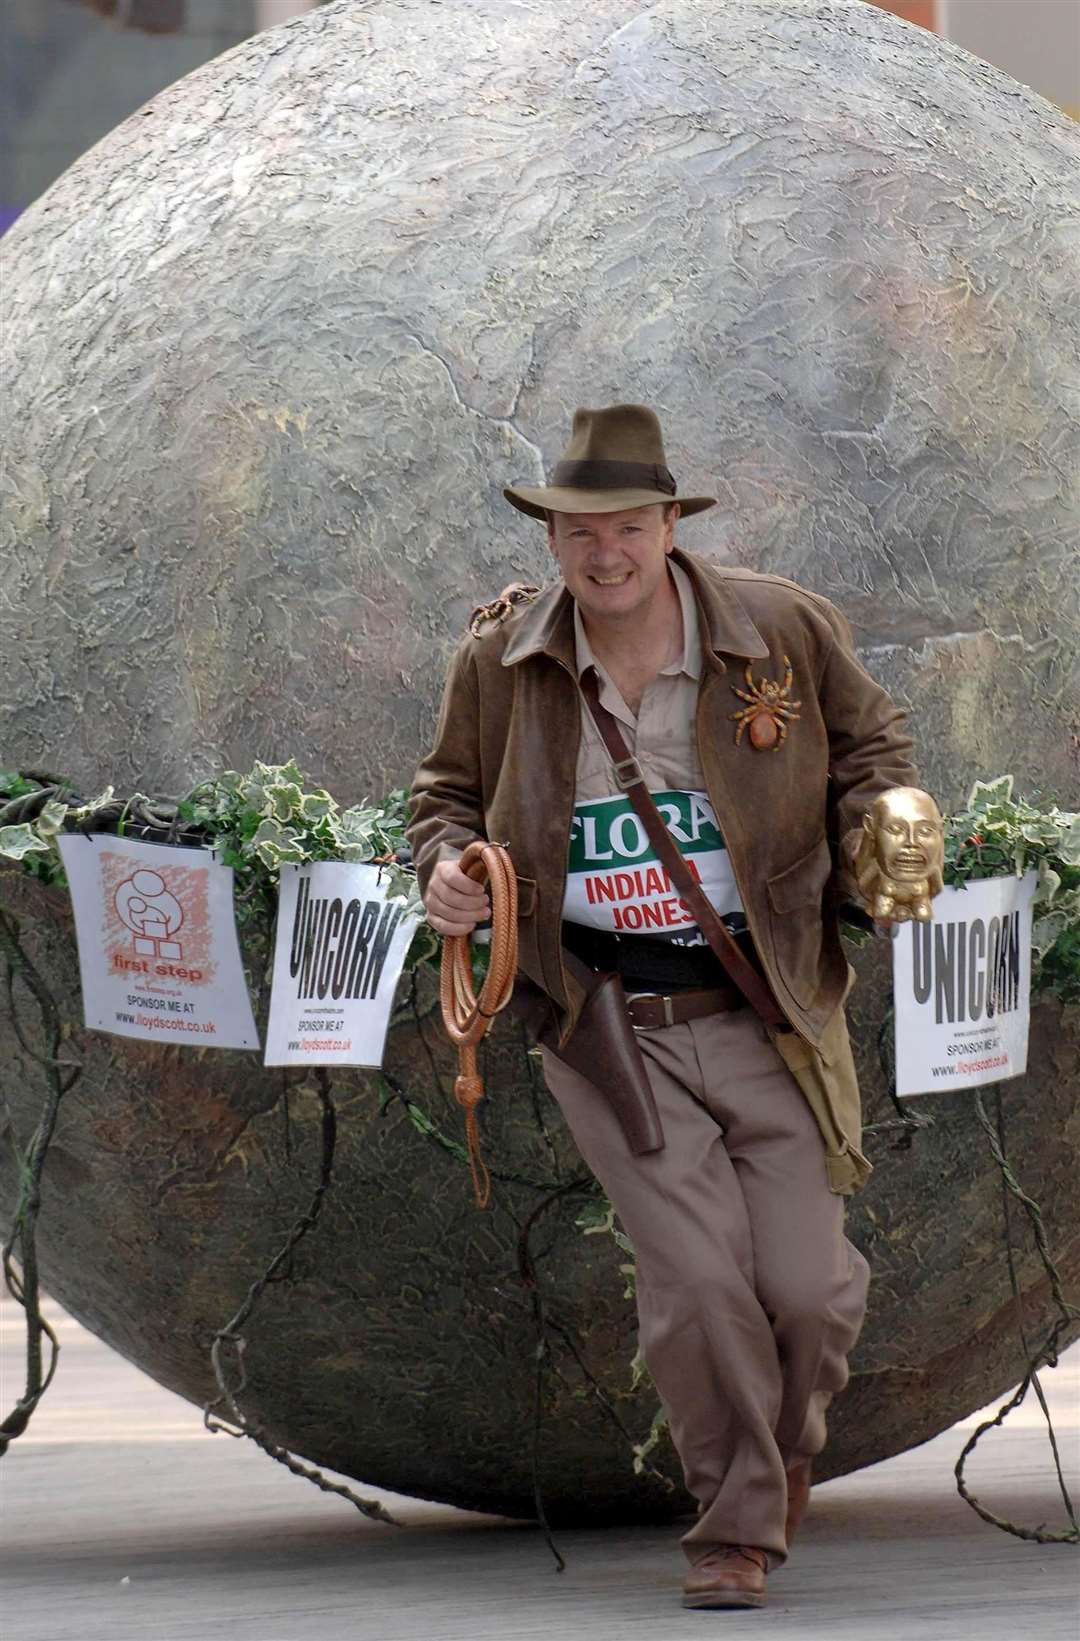 Lloyd Scott dressed as Indiana Jones (Stefan Rousseau/PA)